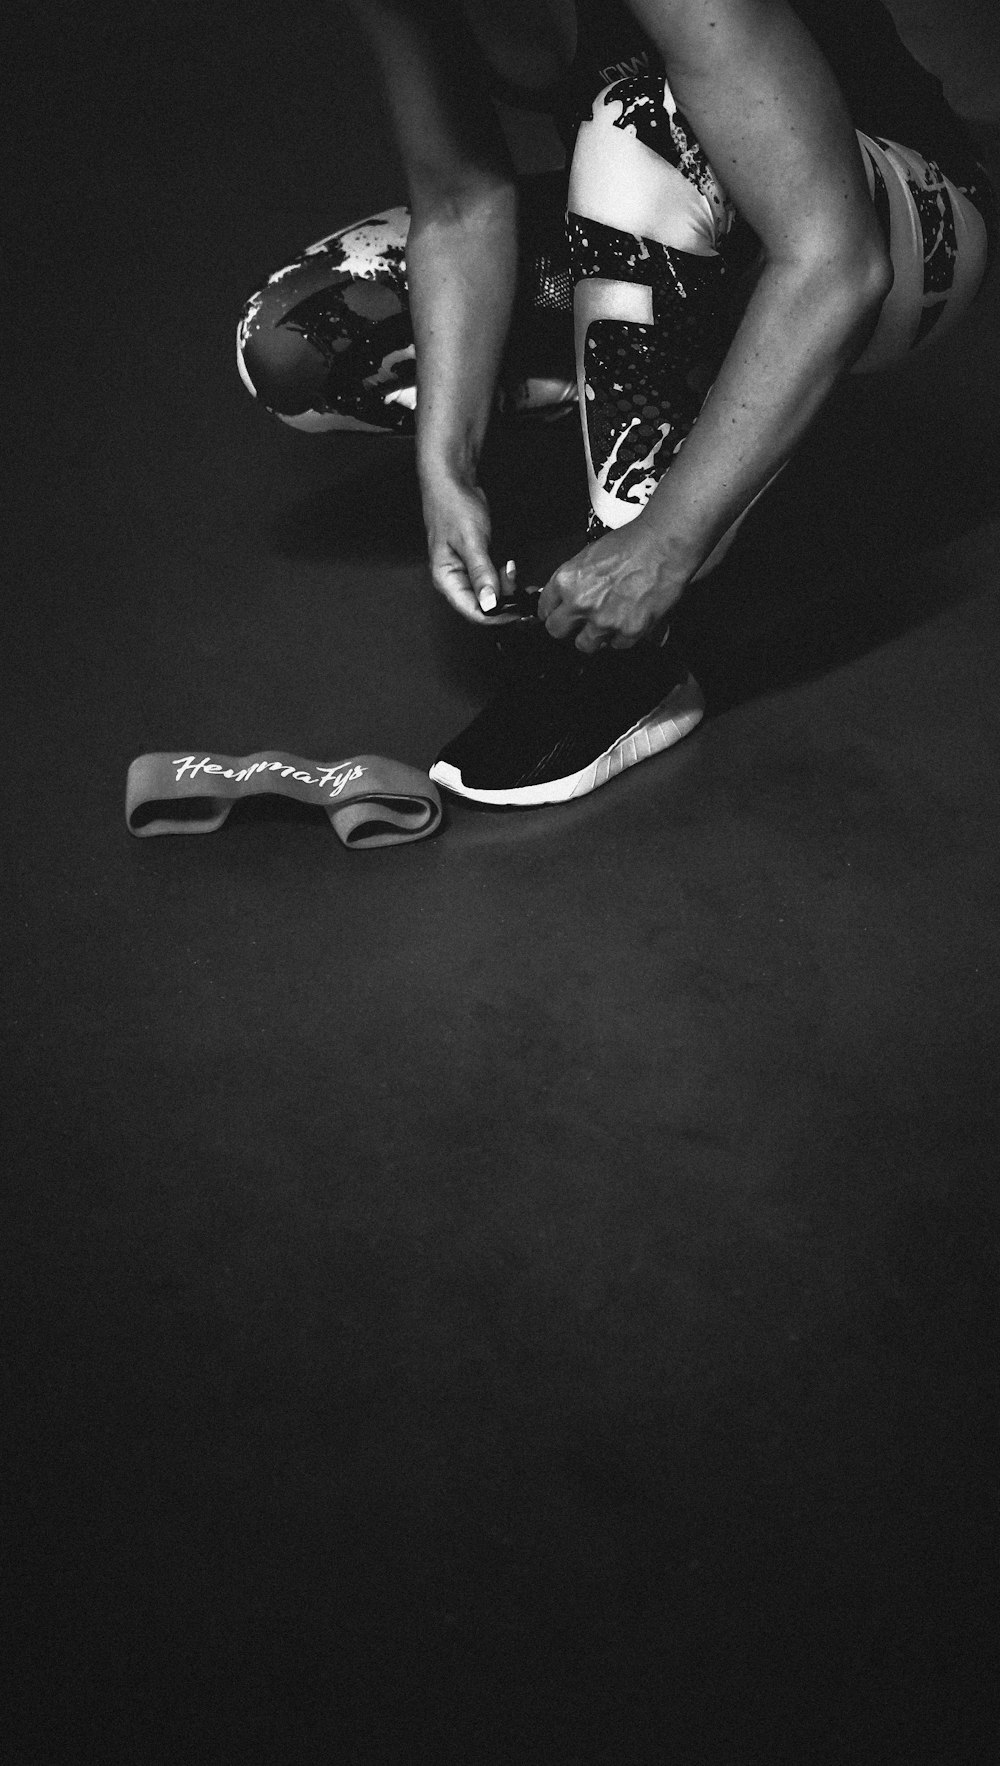 スニーカーを履いている人のグレースケール写真